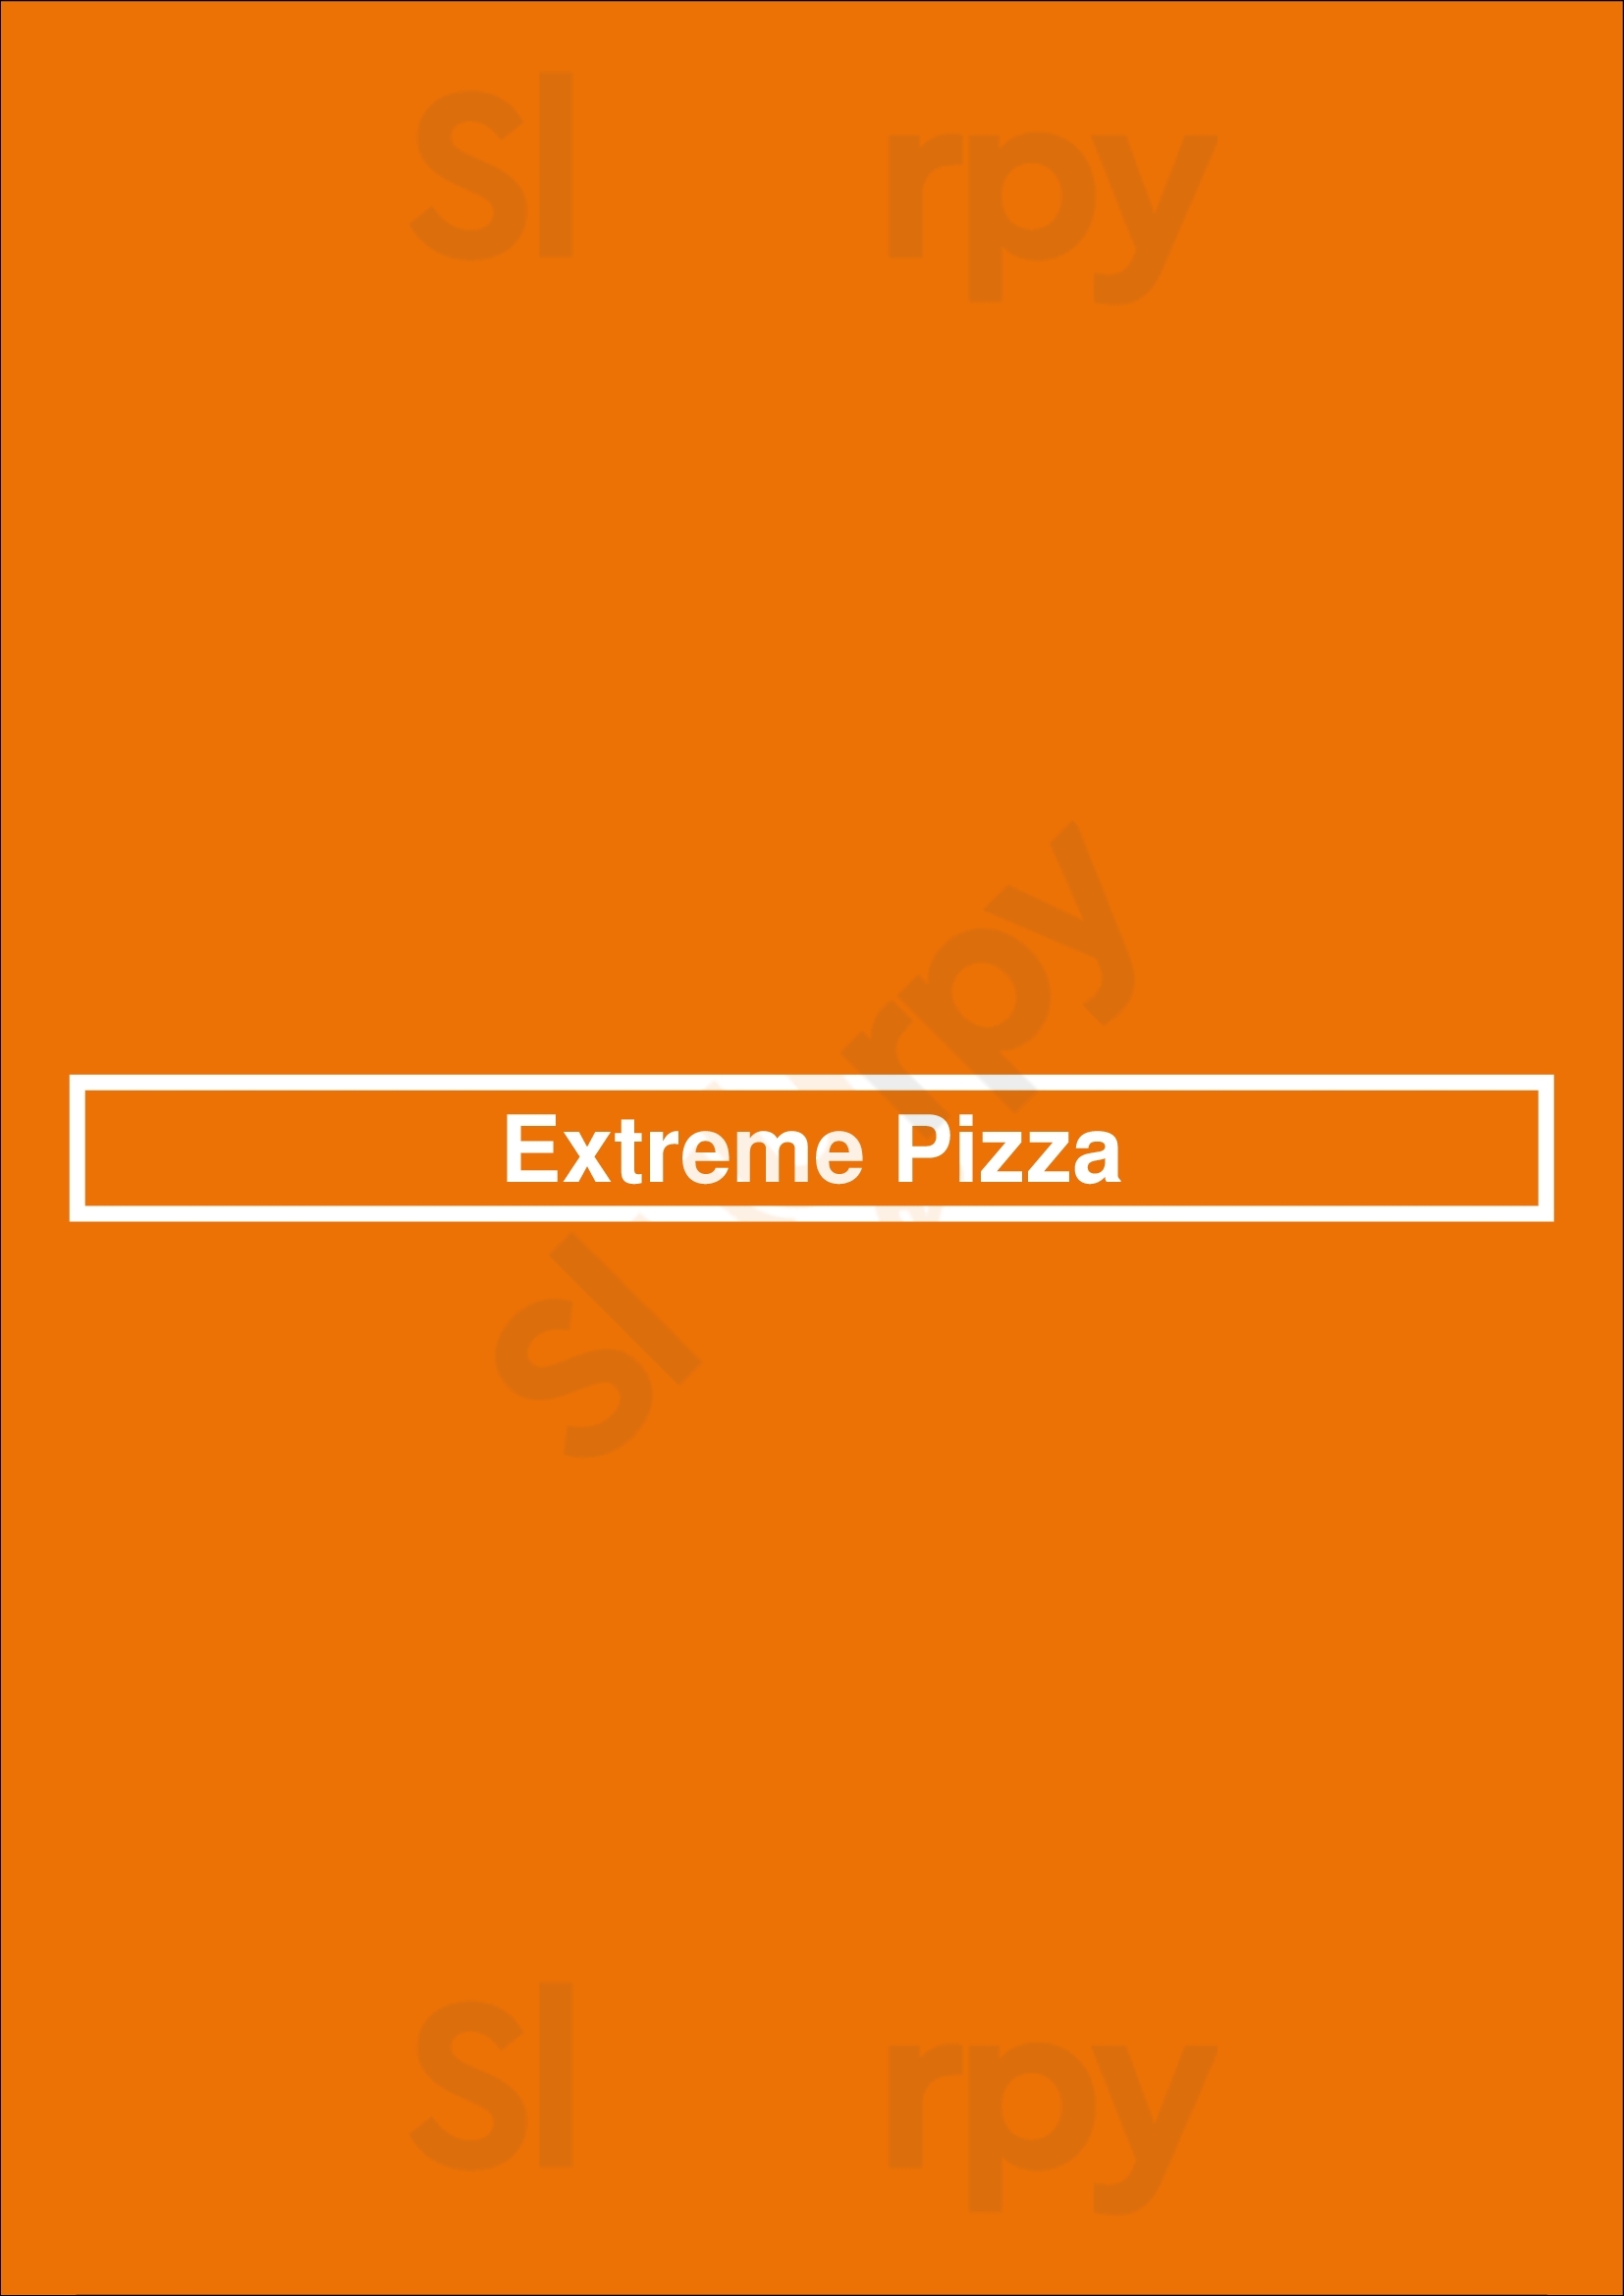 Extreme Pizza Richmond Menu - 1